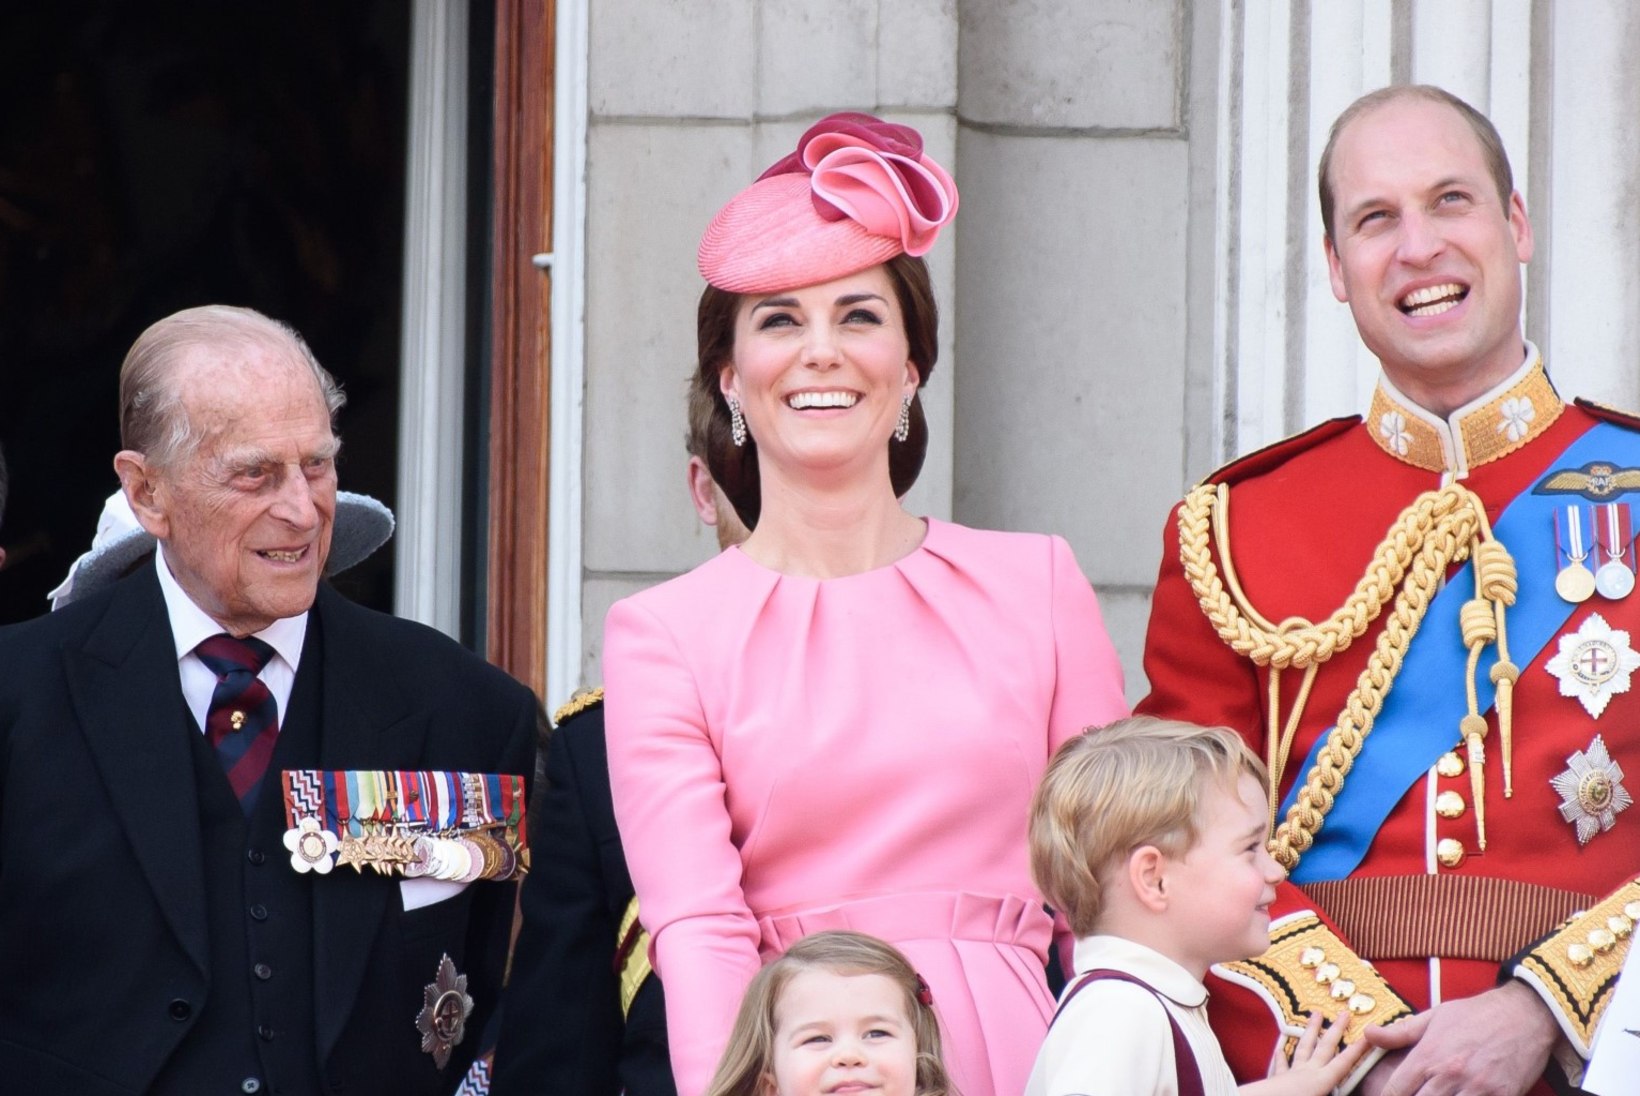 Prints William andis infot oma vanaisa Philipi tervisliku seisundi kohta